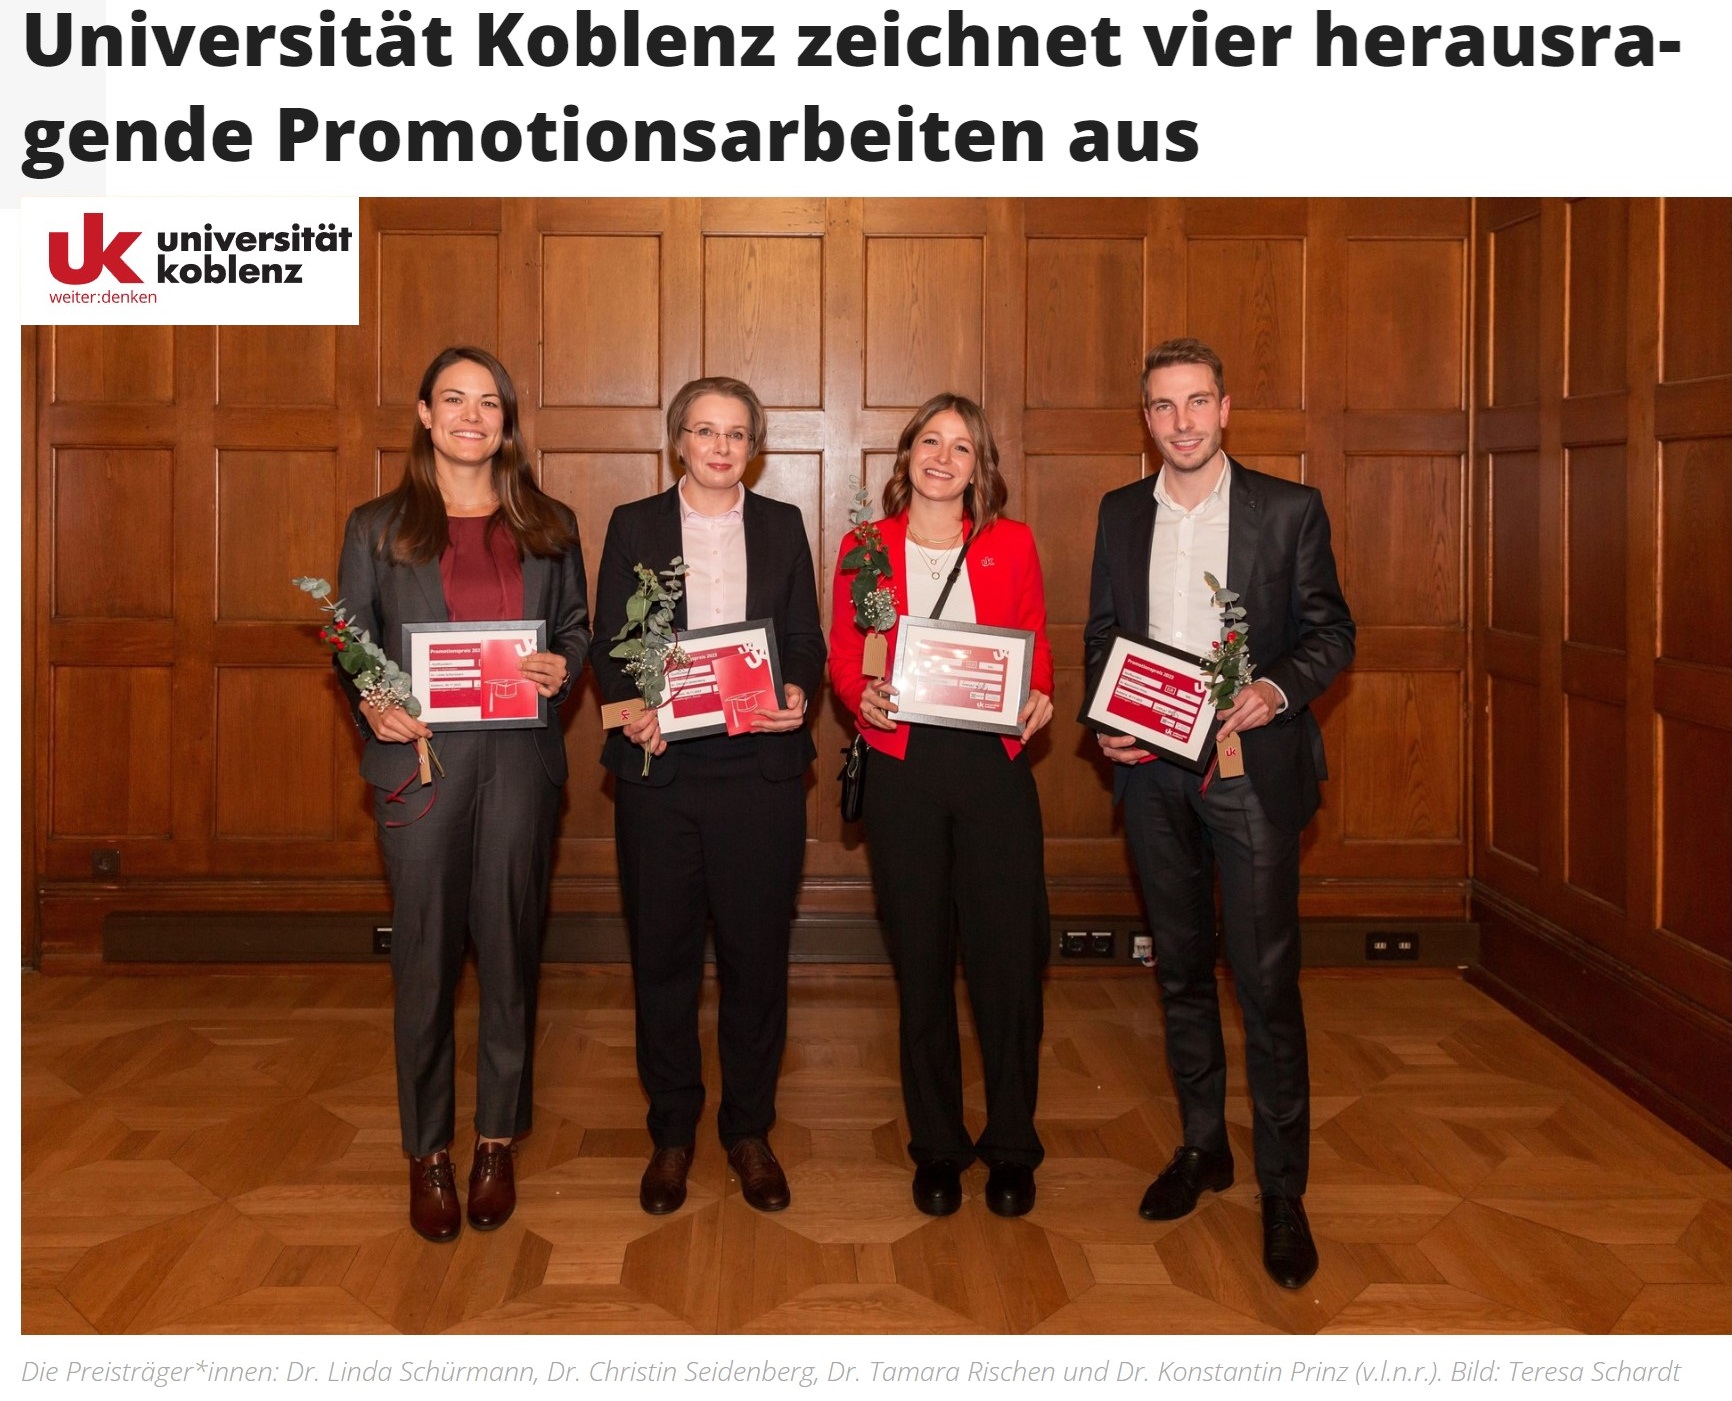 Universität Koblenz zeichnet vier herausragende Promotionsarbeiten aus